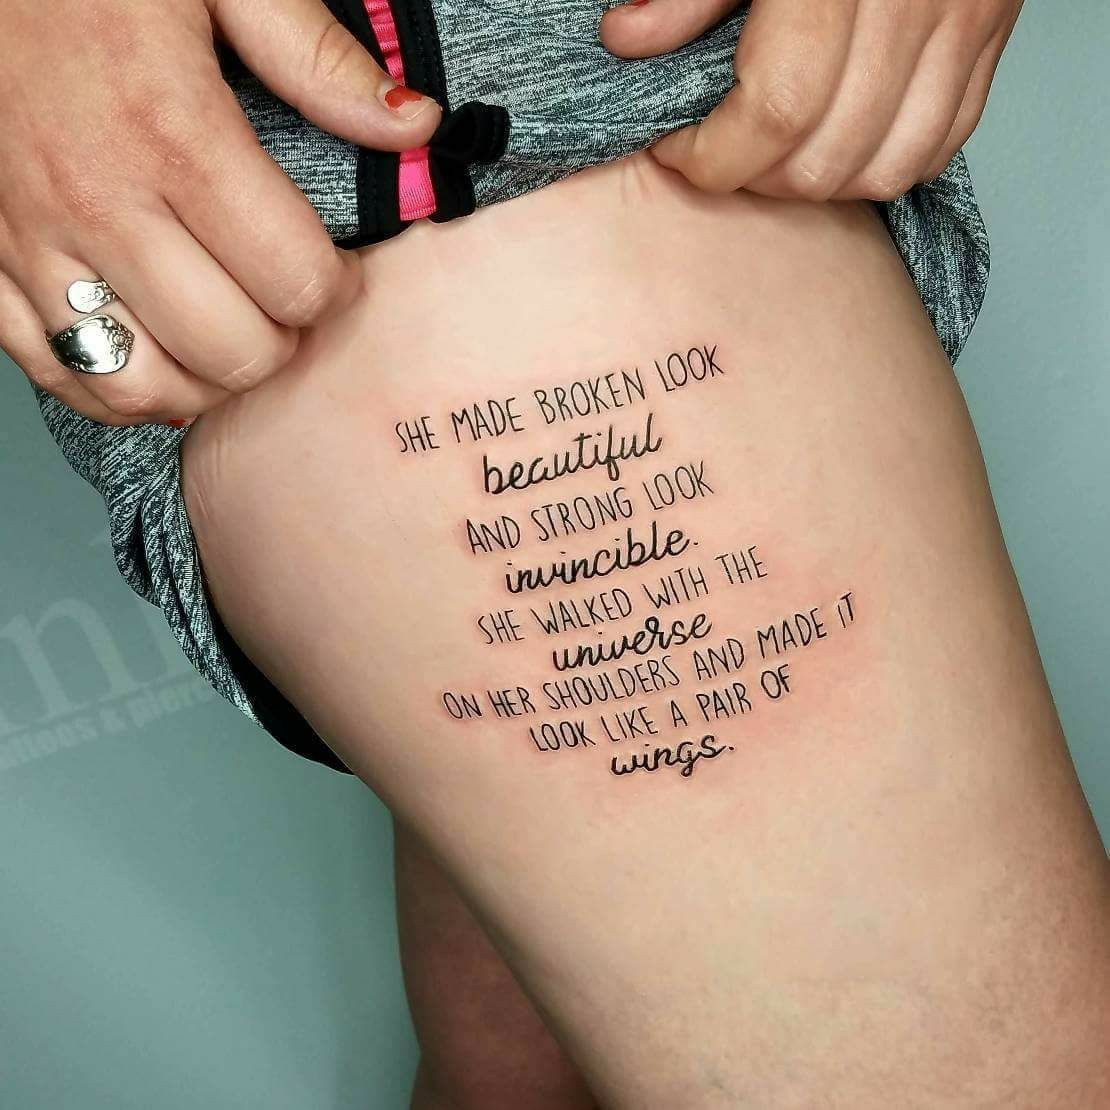 Nombre de dessins de tatouage ayant une signification